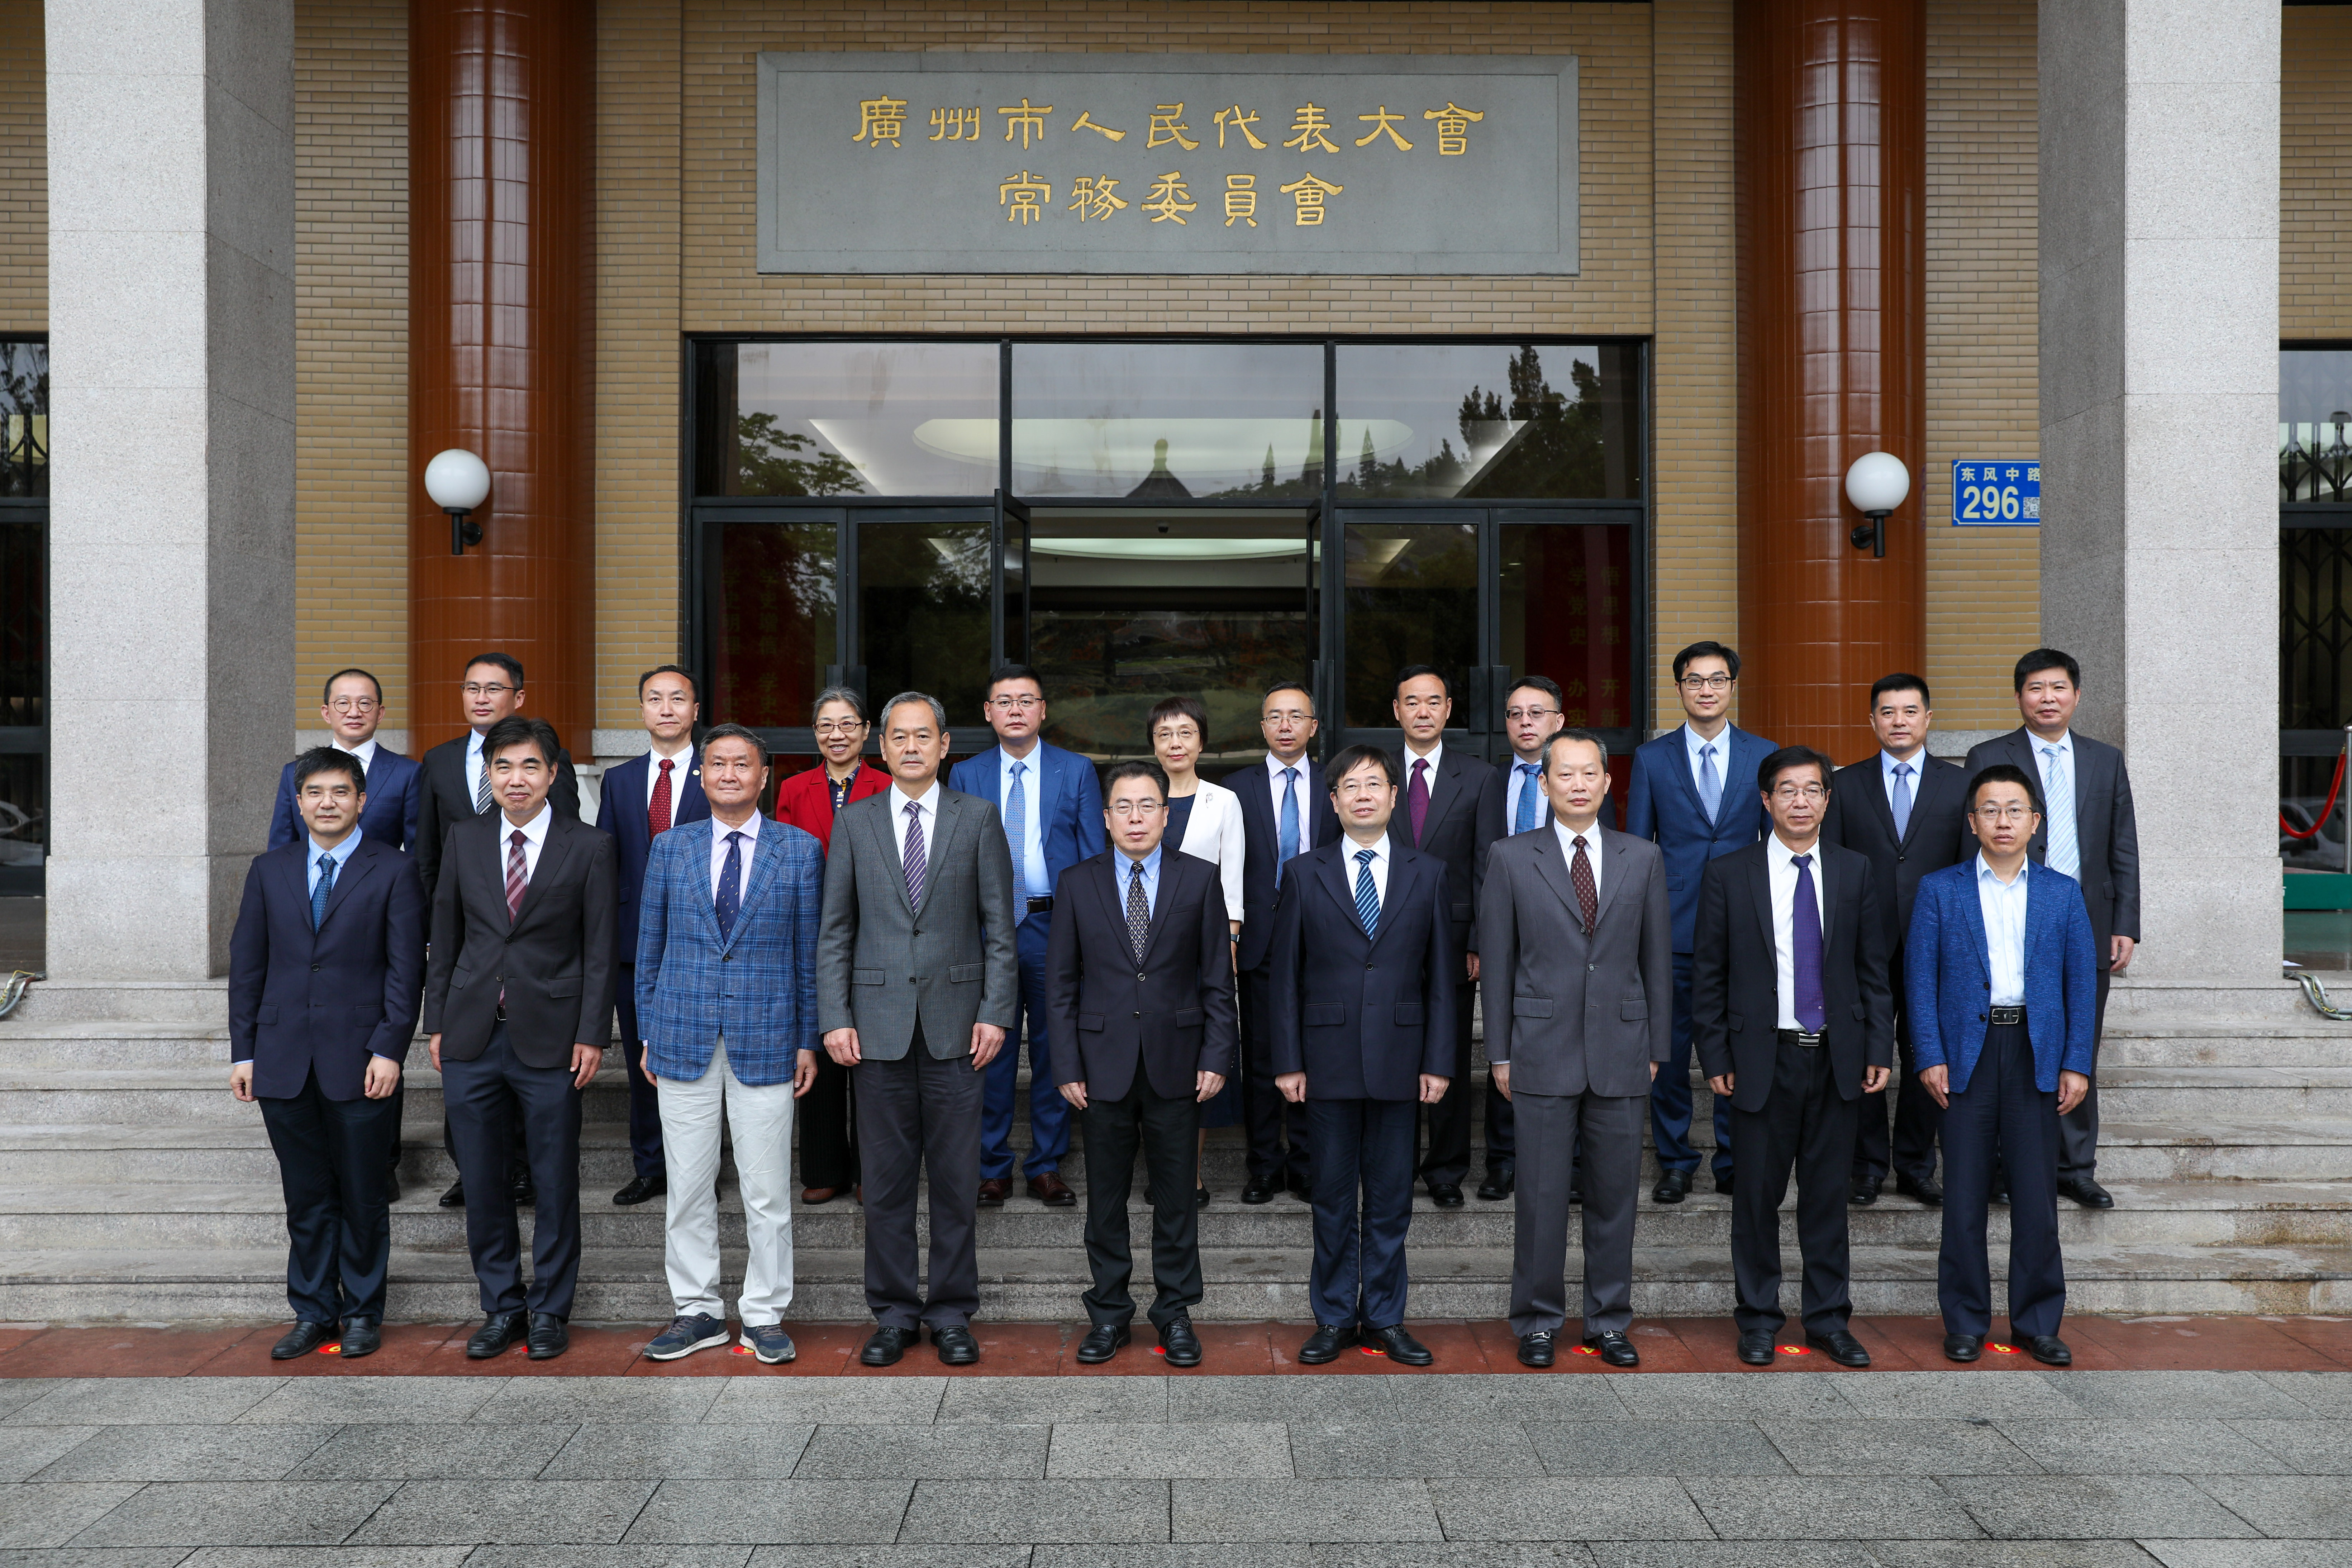 广州市人大常委会聘任24名立法顾问